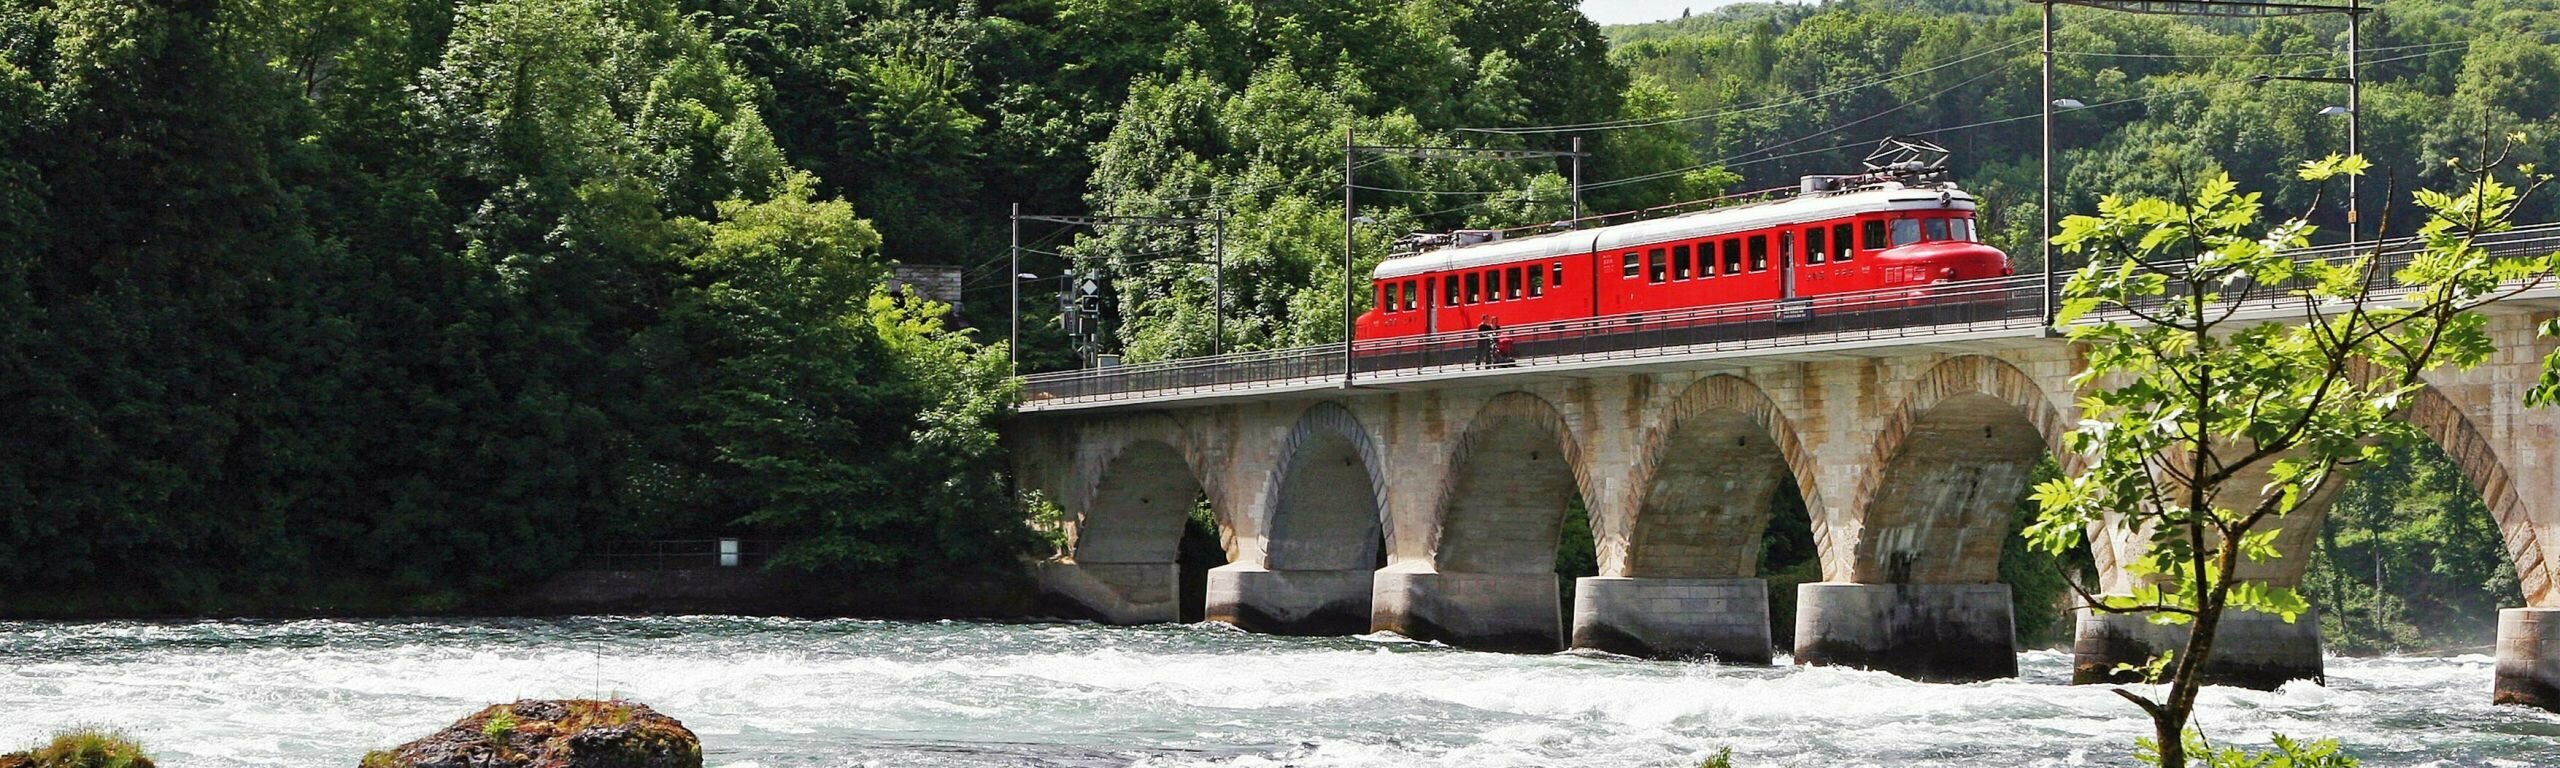 Der «Churchill» auf der Rheinfallbrücke